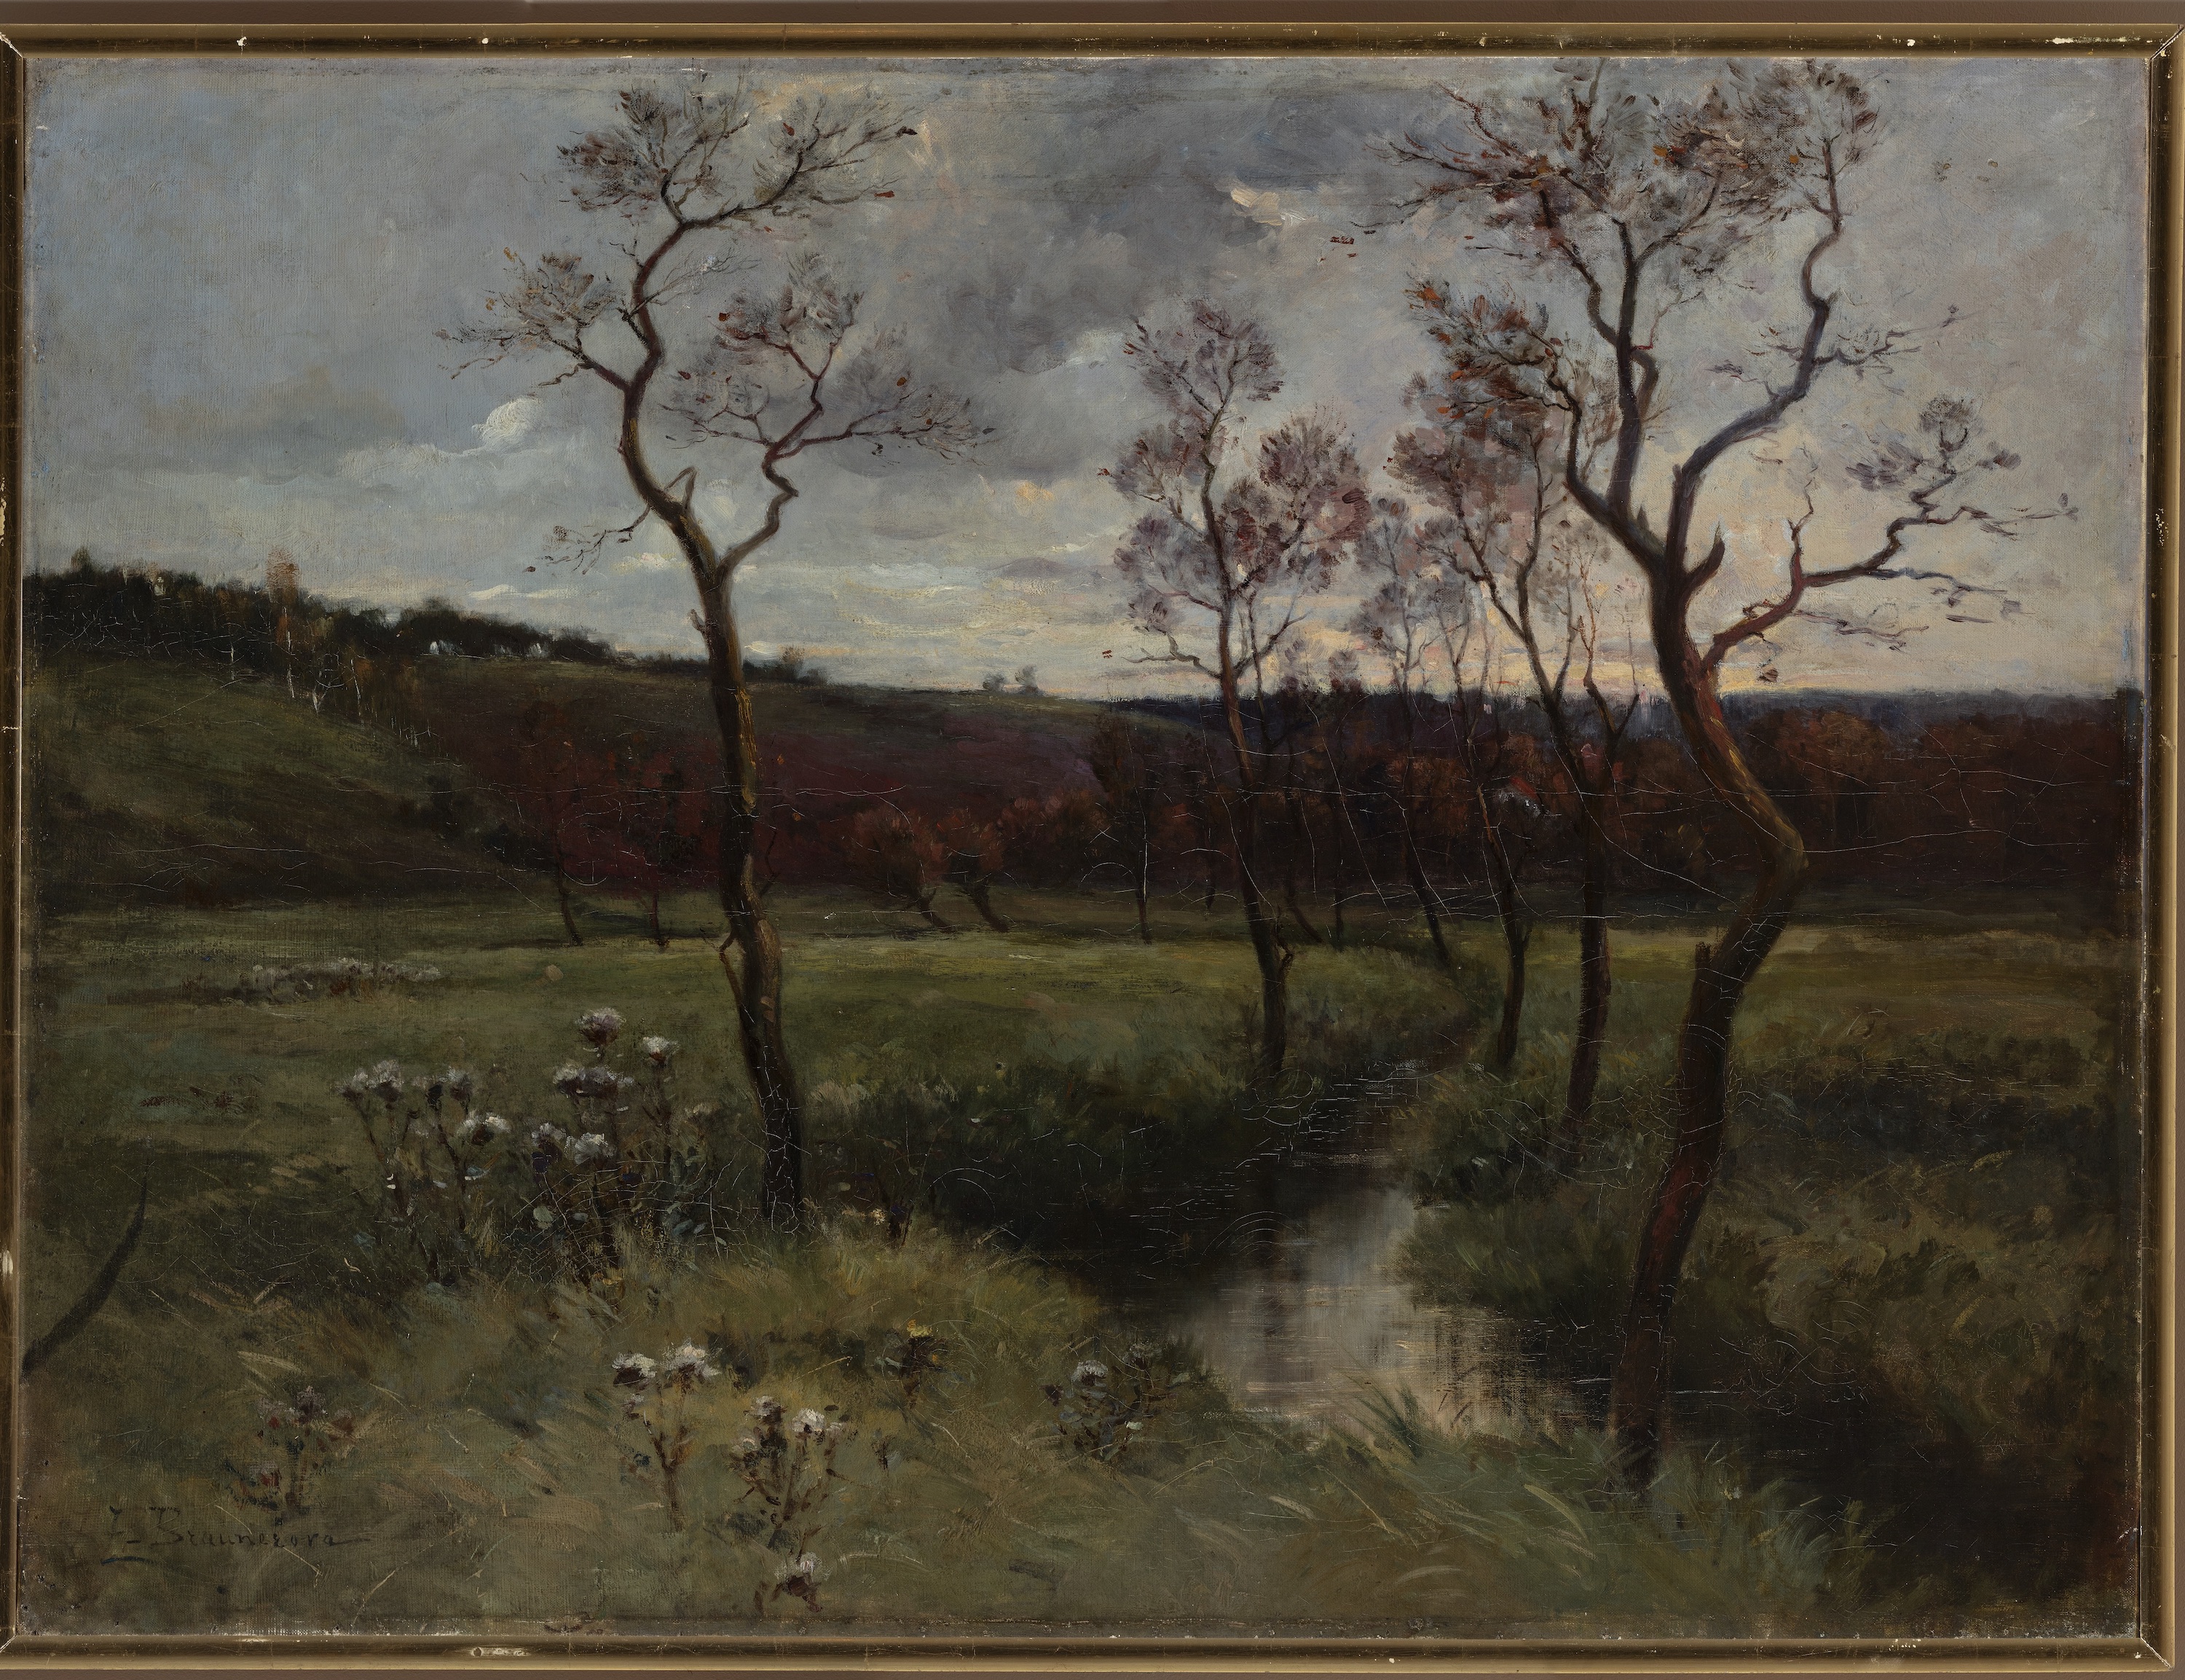 O vale liniștită în Roztoky by Zdenka Braunerová - cca. 1886 - 83 x 110 cm 